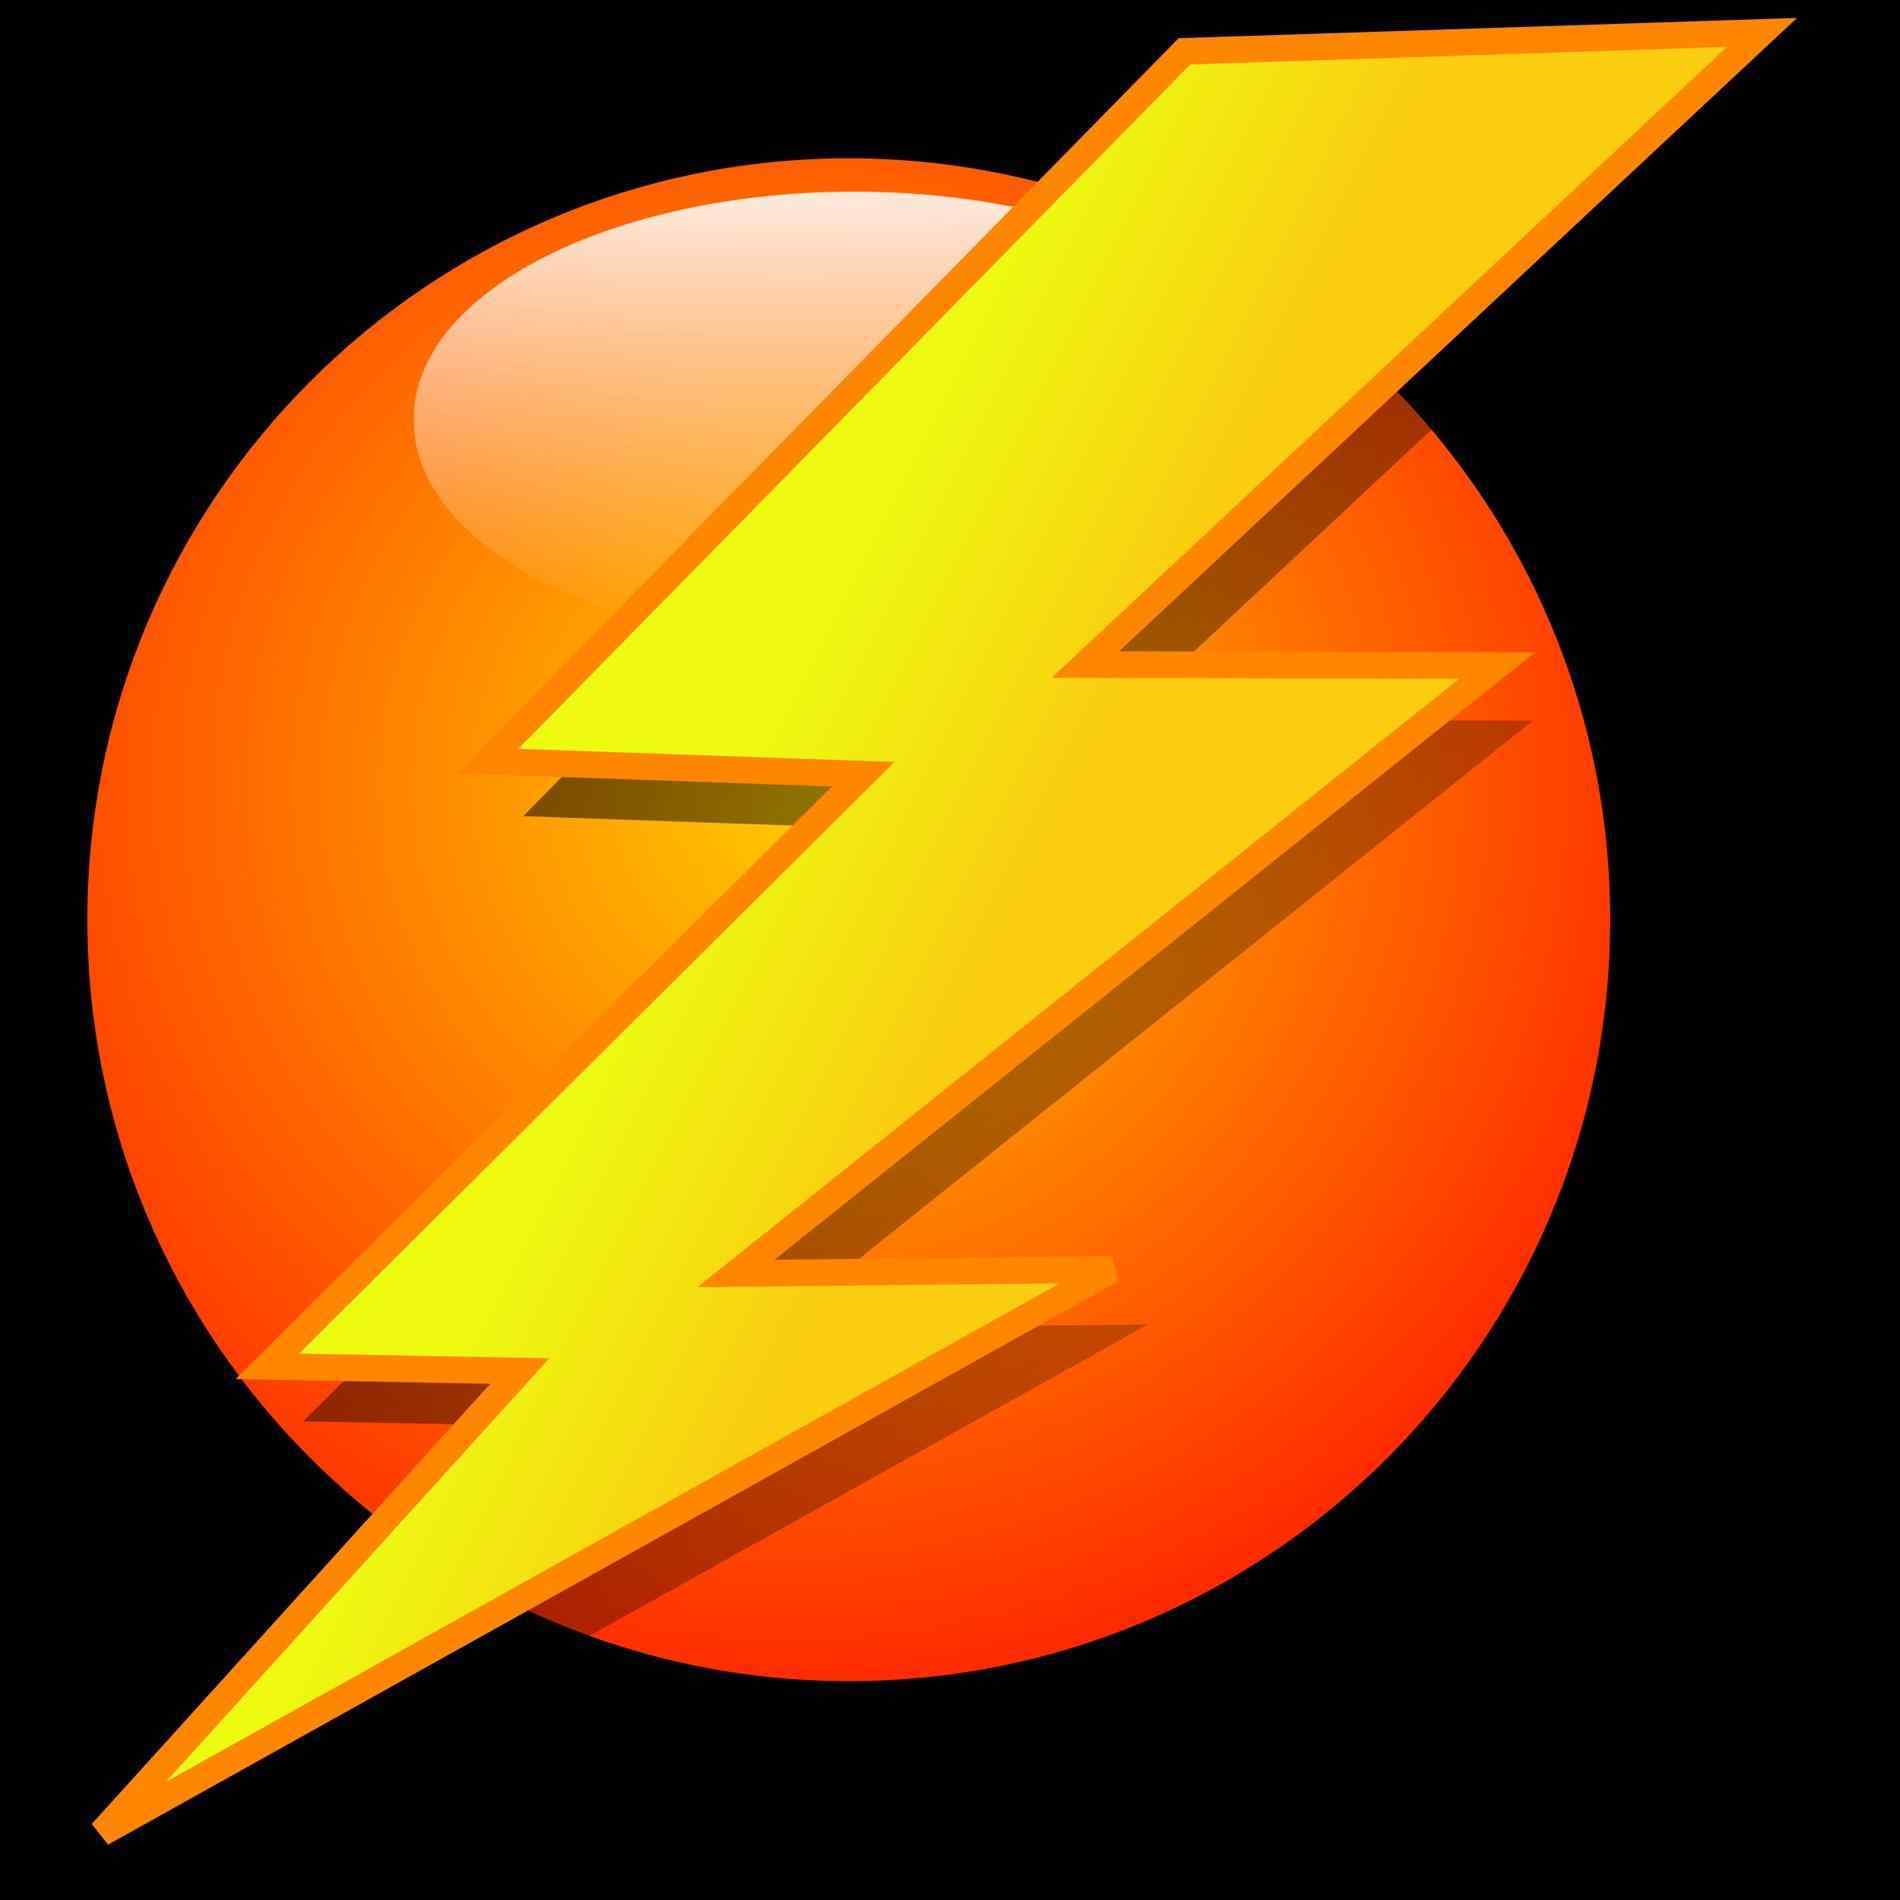 Lighting Bolt History Encyclopedia Lightning Art Group Lightning ...